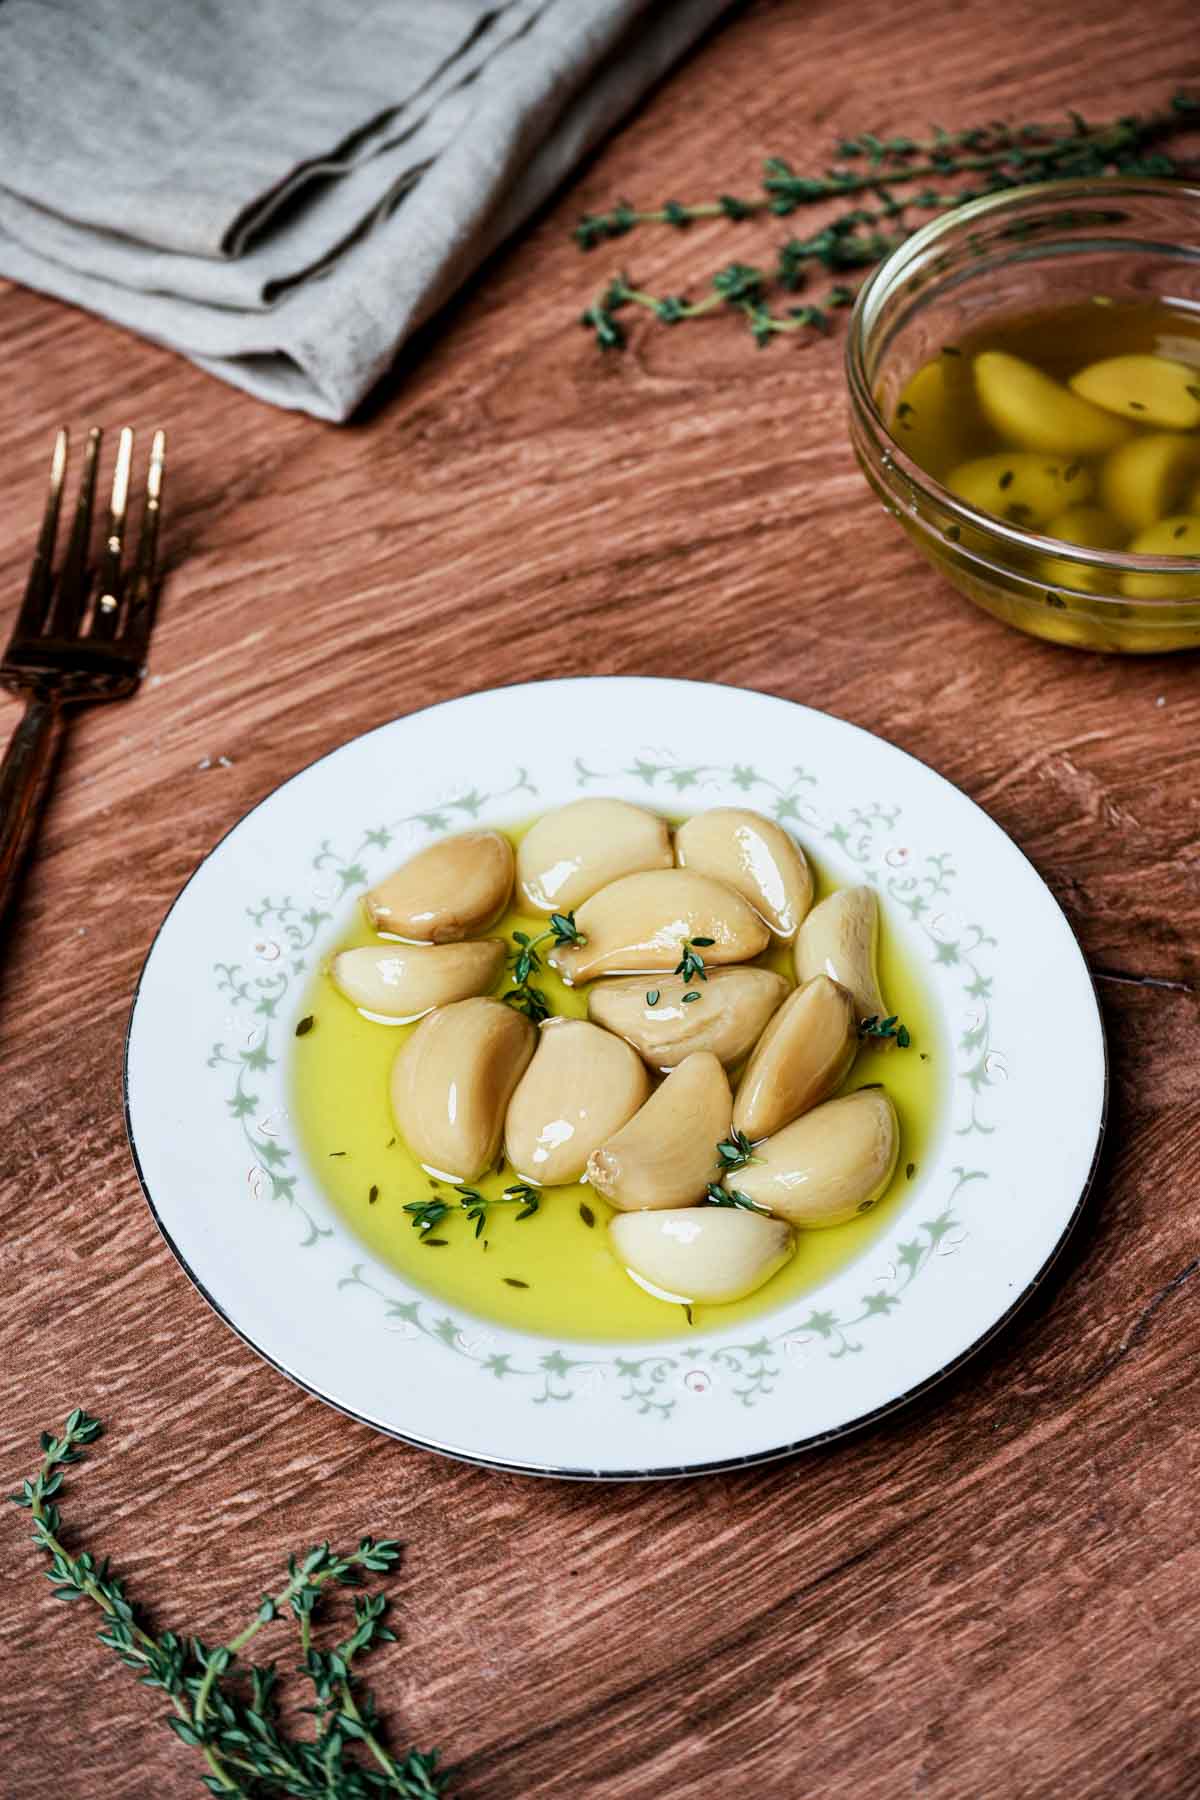 cloves og garlic in oil on a white plate